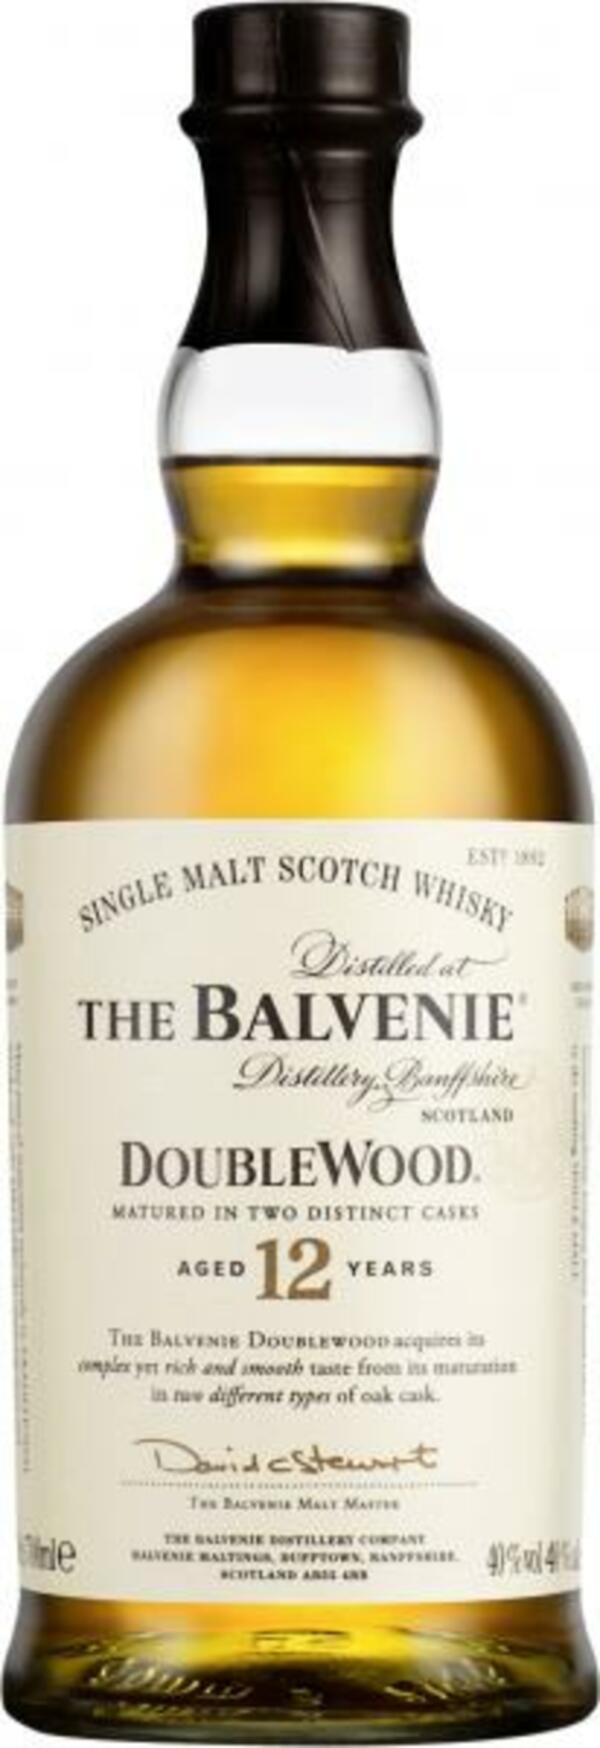 Bild 1 von Balvenie Double Wood Single Malt Scotch Whisky 12 years